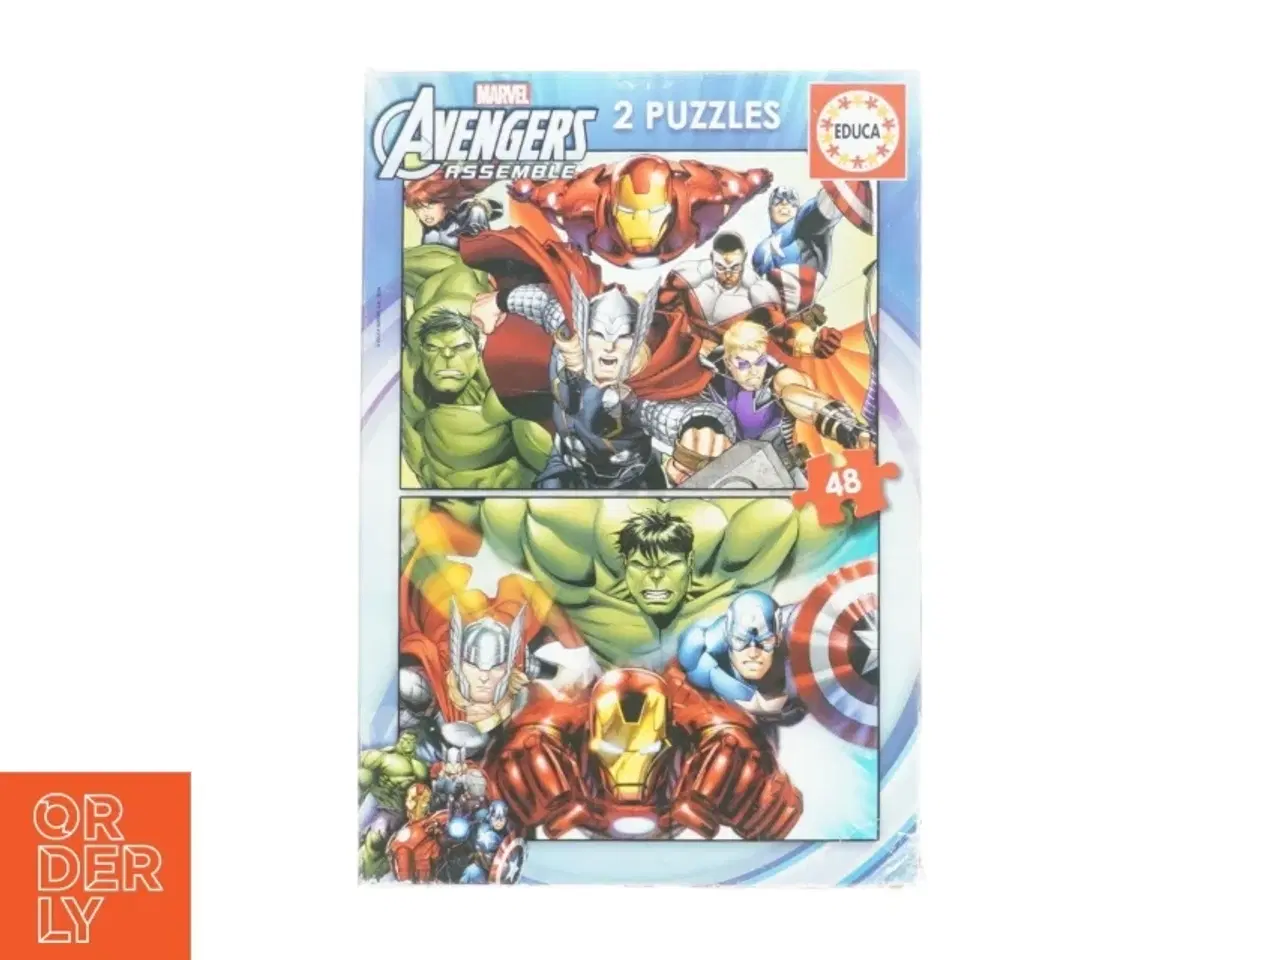 Billede 1 - Puslespil med Avengers motiv fra Educa (str. 32 x 22 cm)